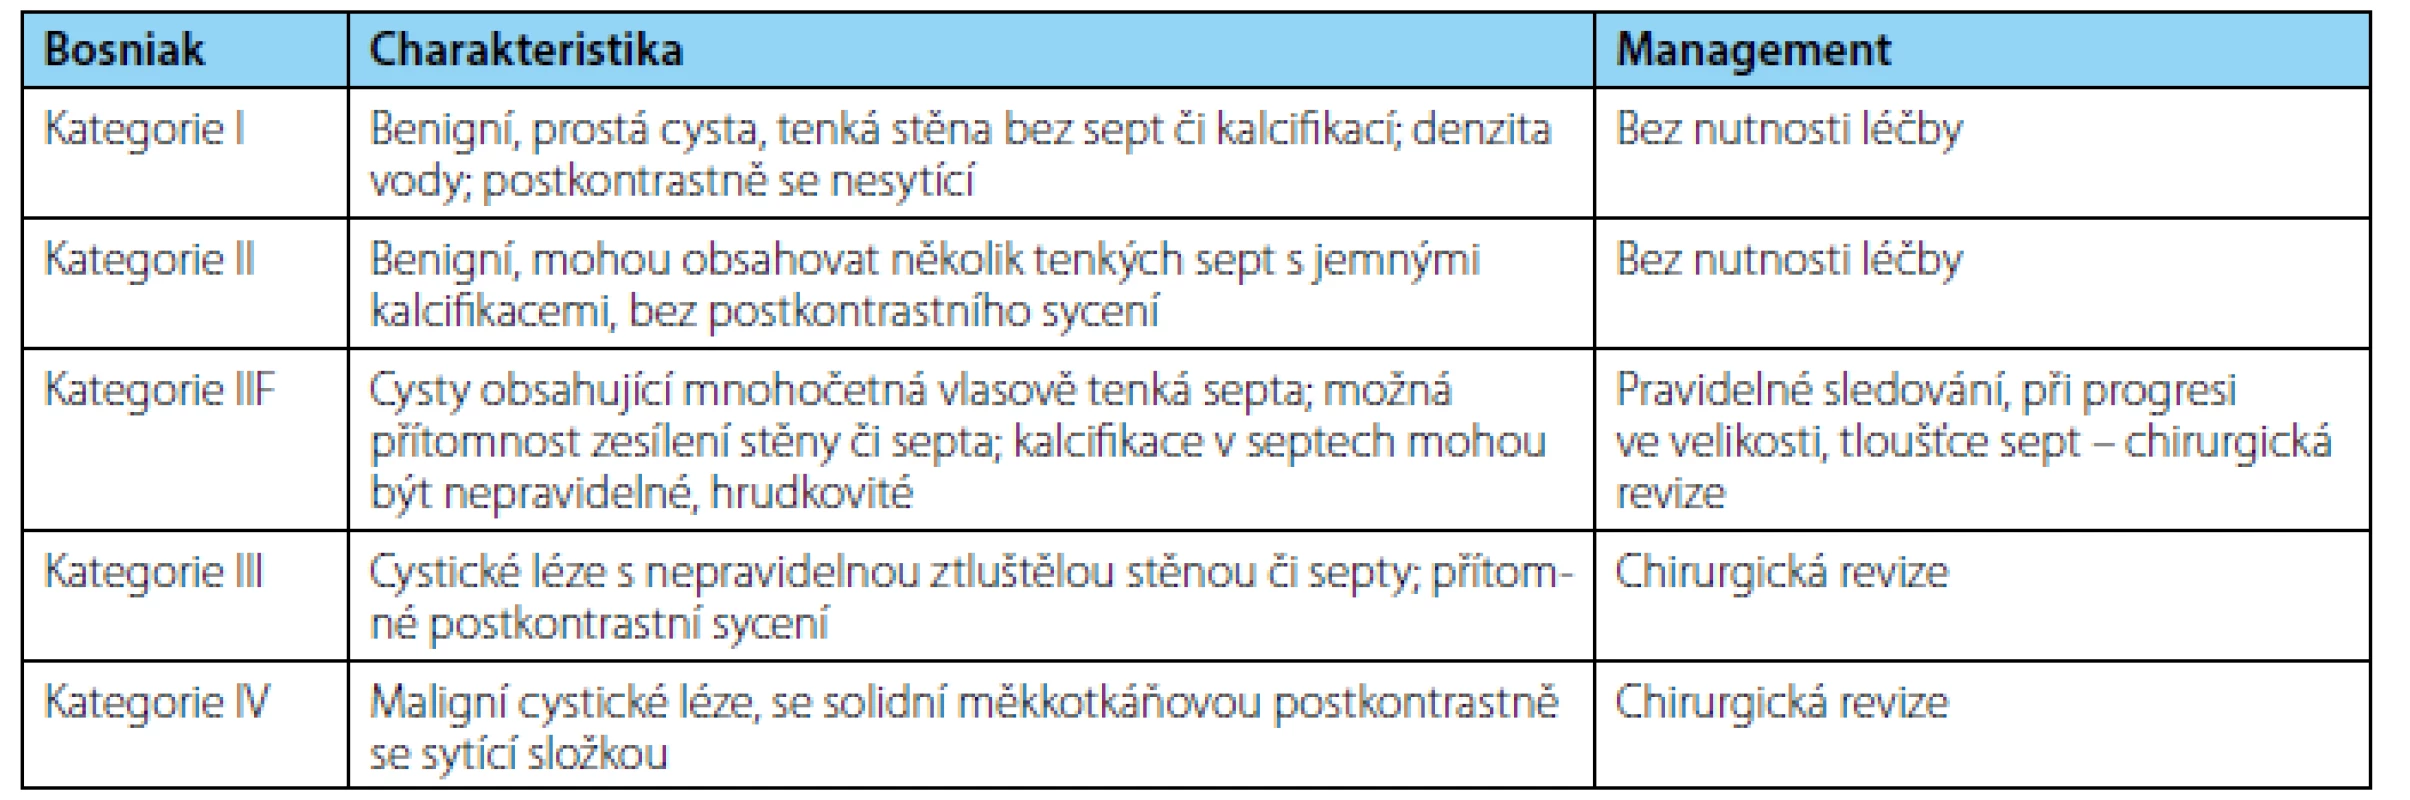 &lt;i&gt;Bosniakova klasifikace cystických lézí ledvin&lt;/i&gt;
Table 1. &lt;i&gt;Bosniak classification of cystic renal masses&lt;/i&gt;